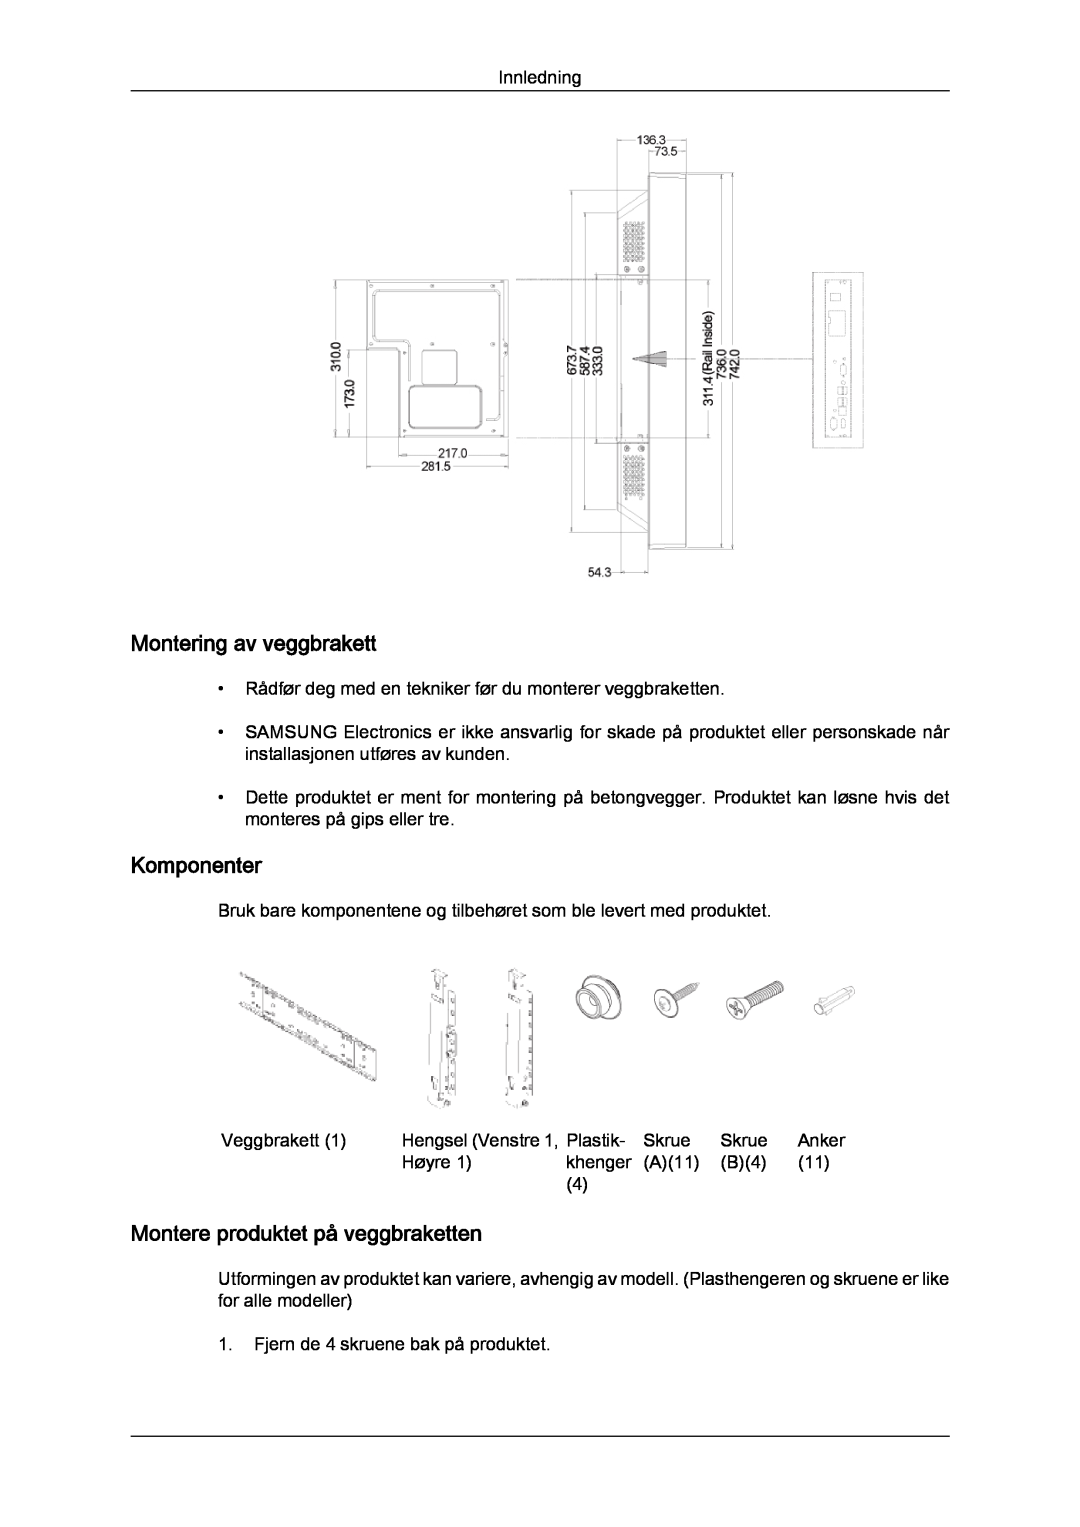 Samsung LH32CRTMBC/EN, LH32CRSMBC/EN manual Montering av veggbrakett, Komponenter, Montere produktet på veggbraketten 